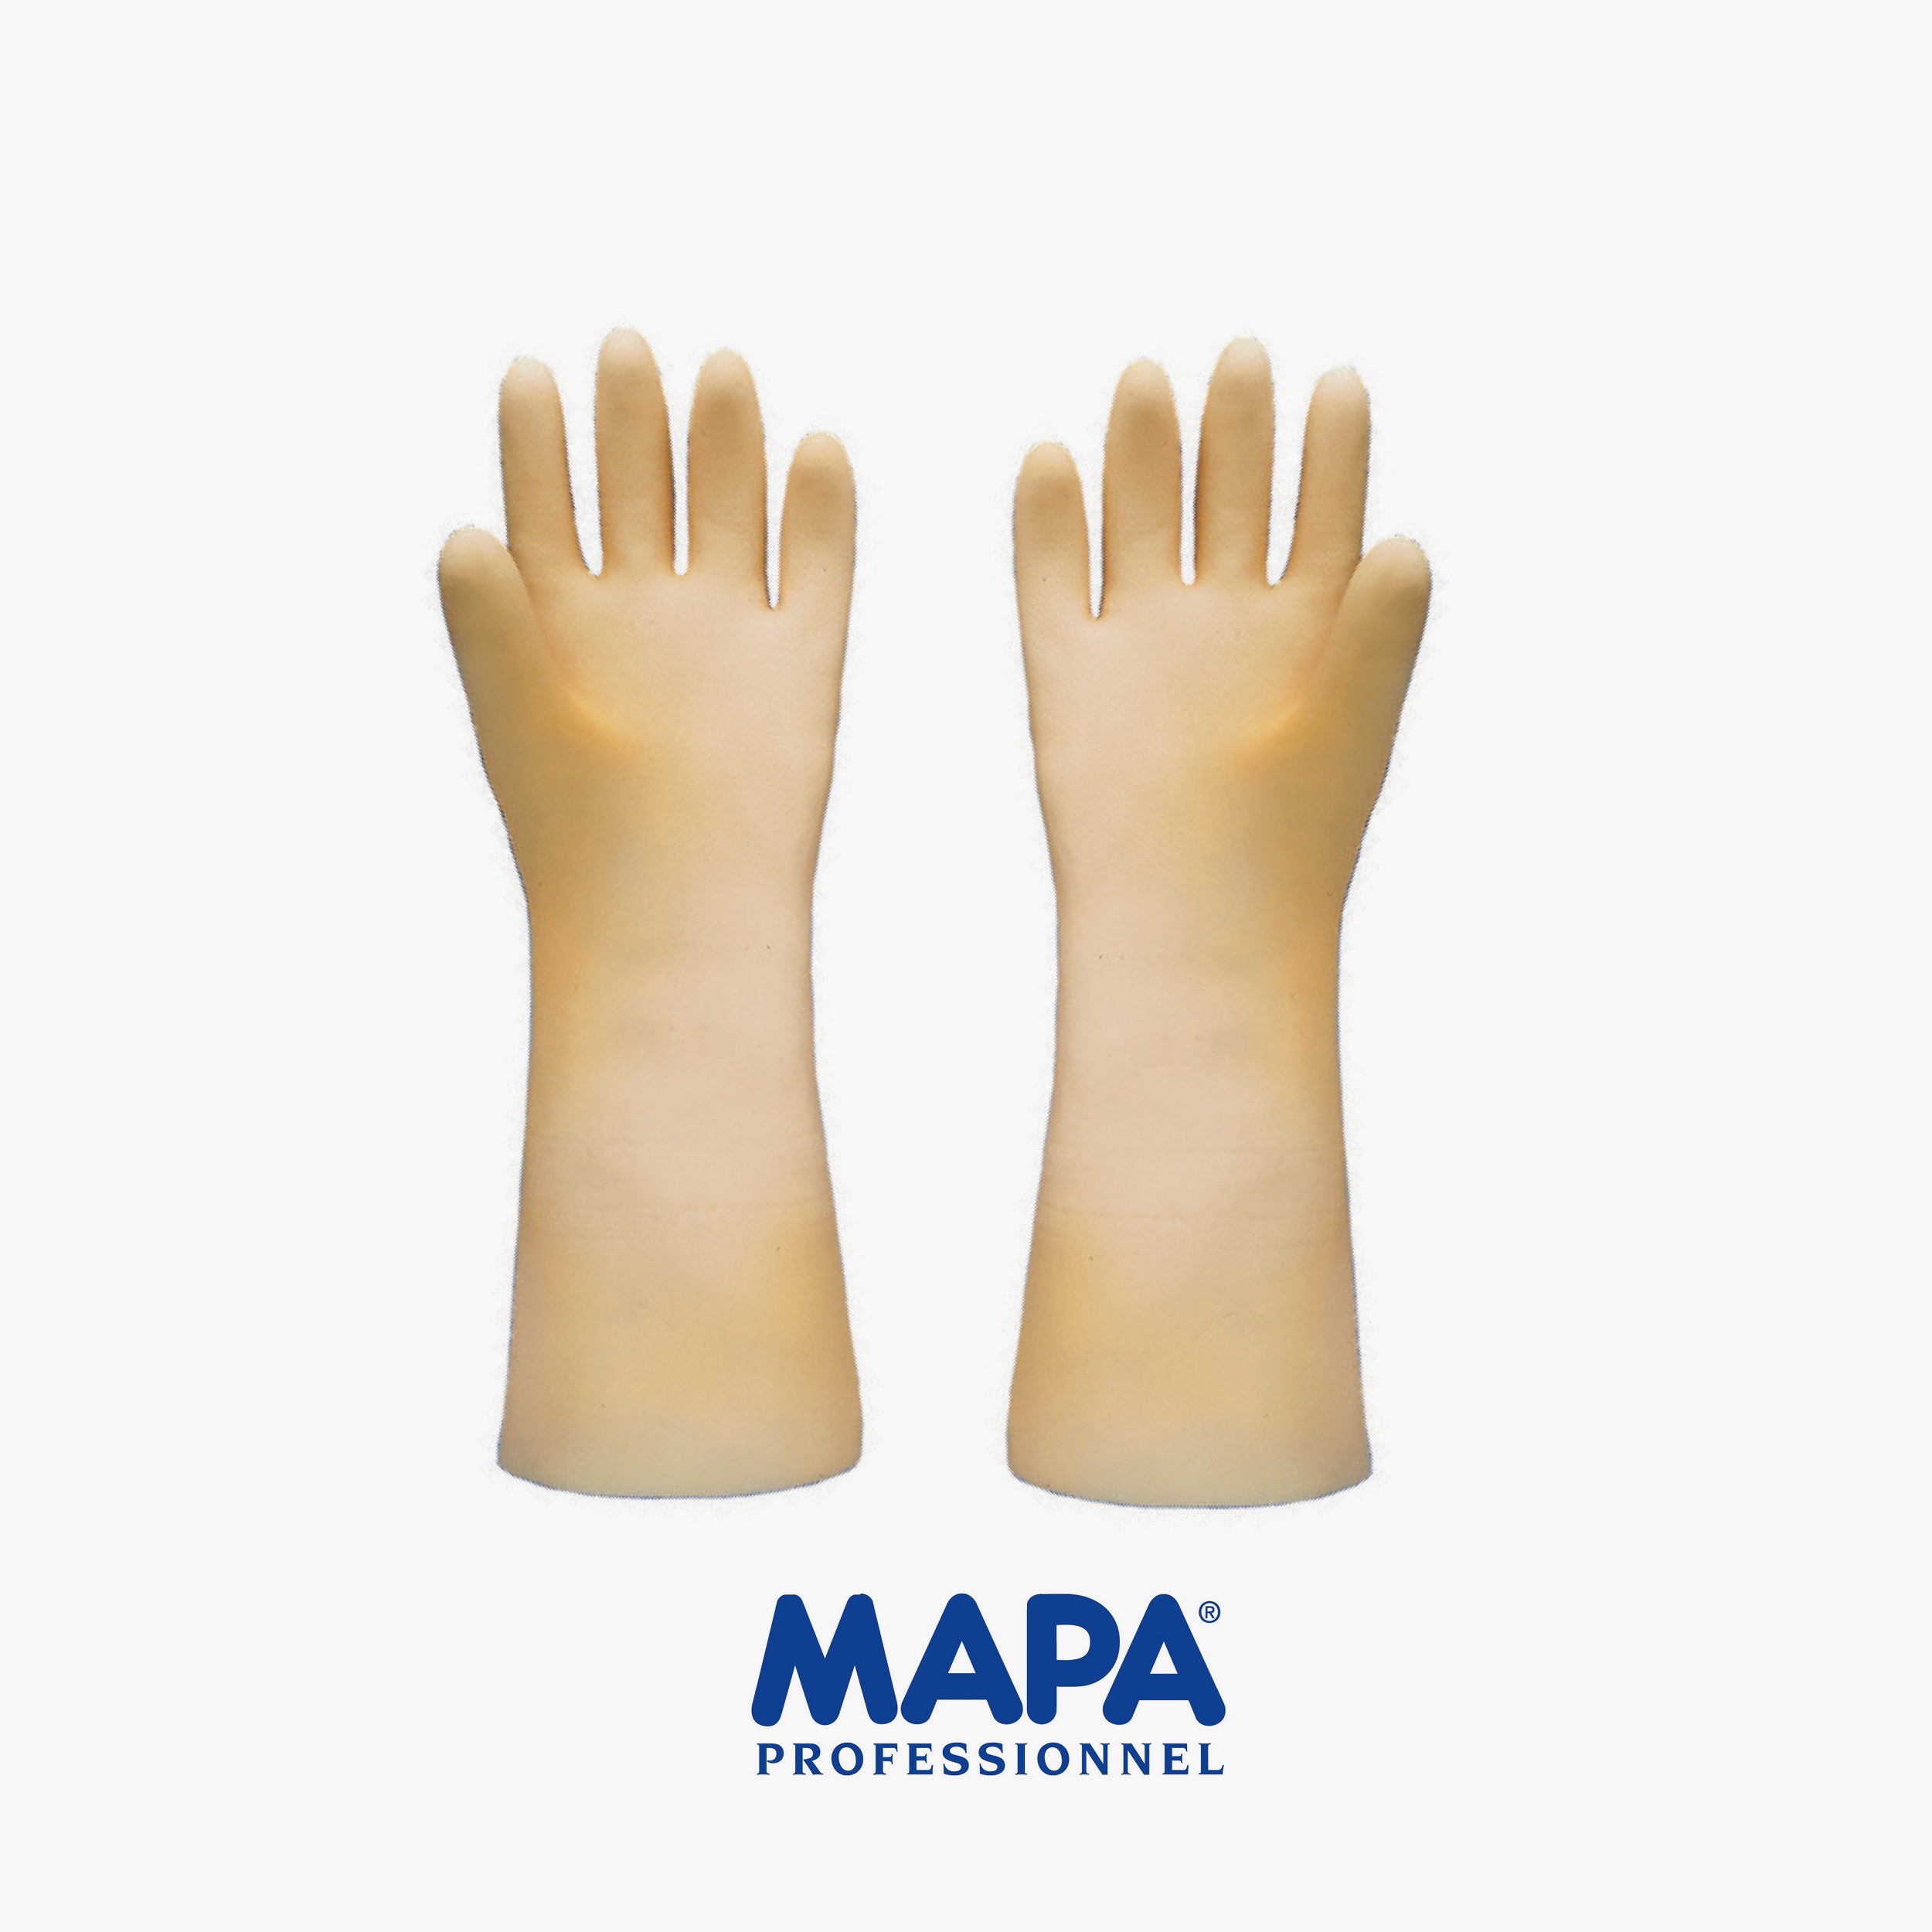 MAPA ADVANTEC exTRIONIC gloves cm.61 size (10/8/9)